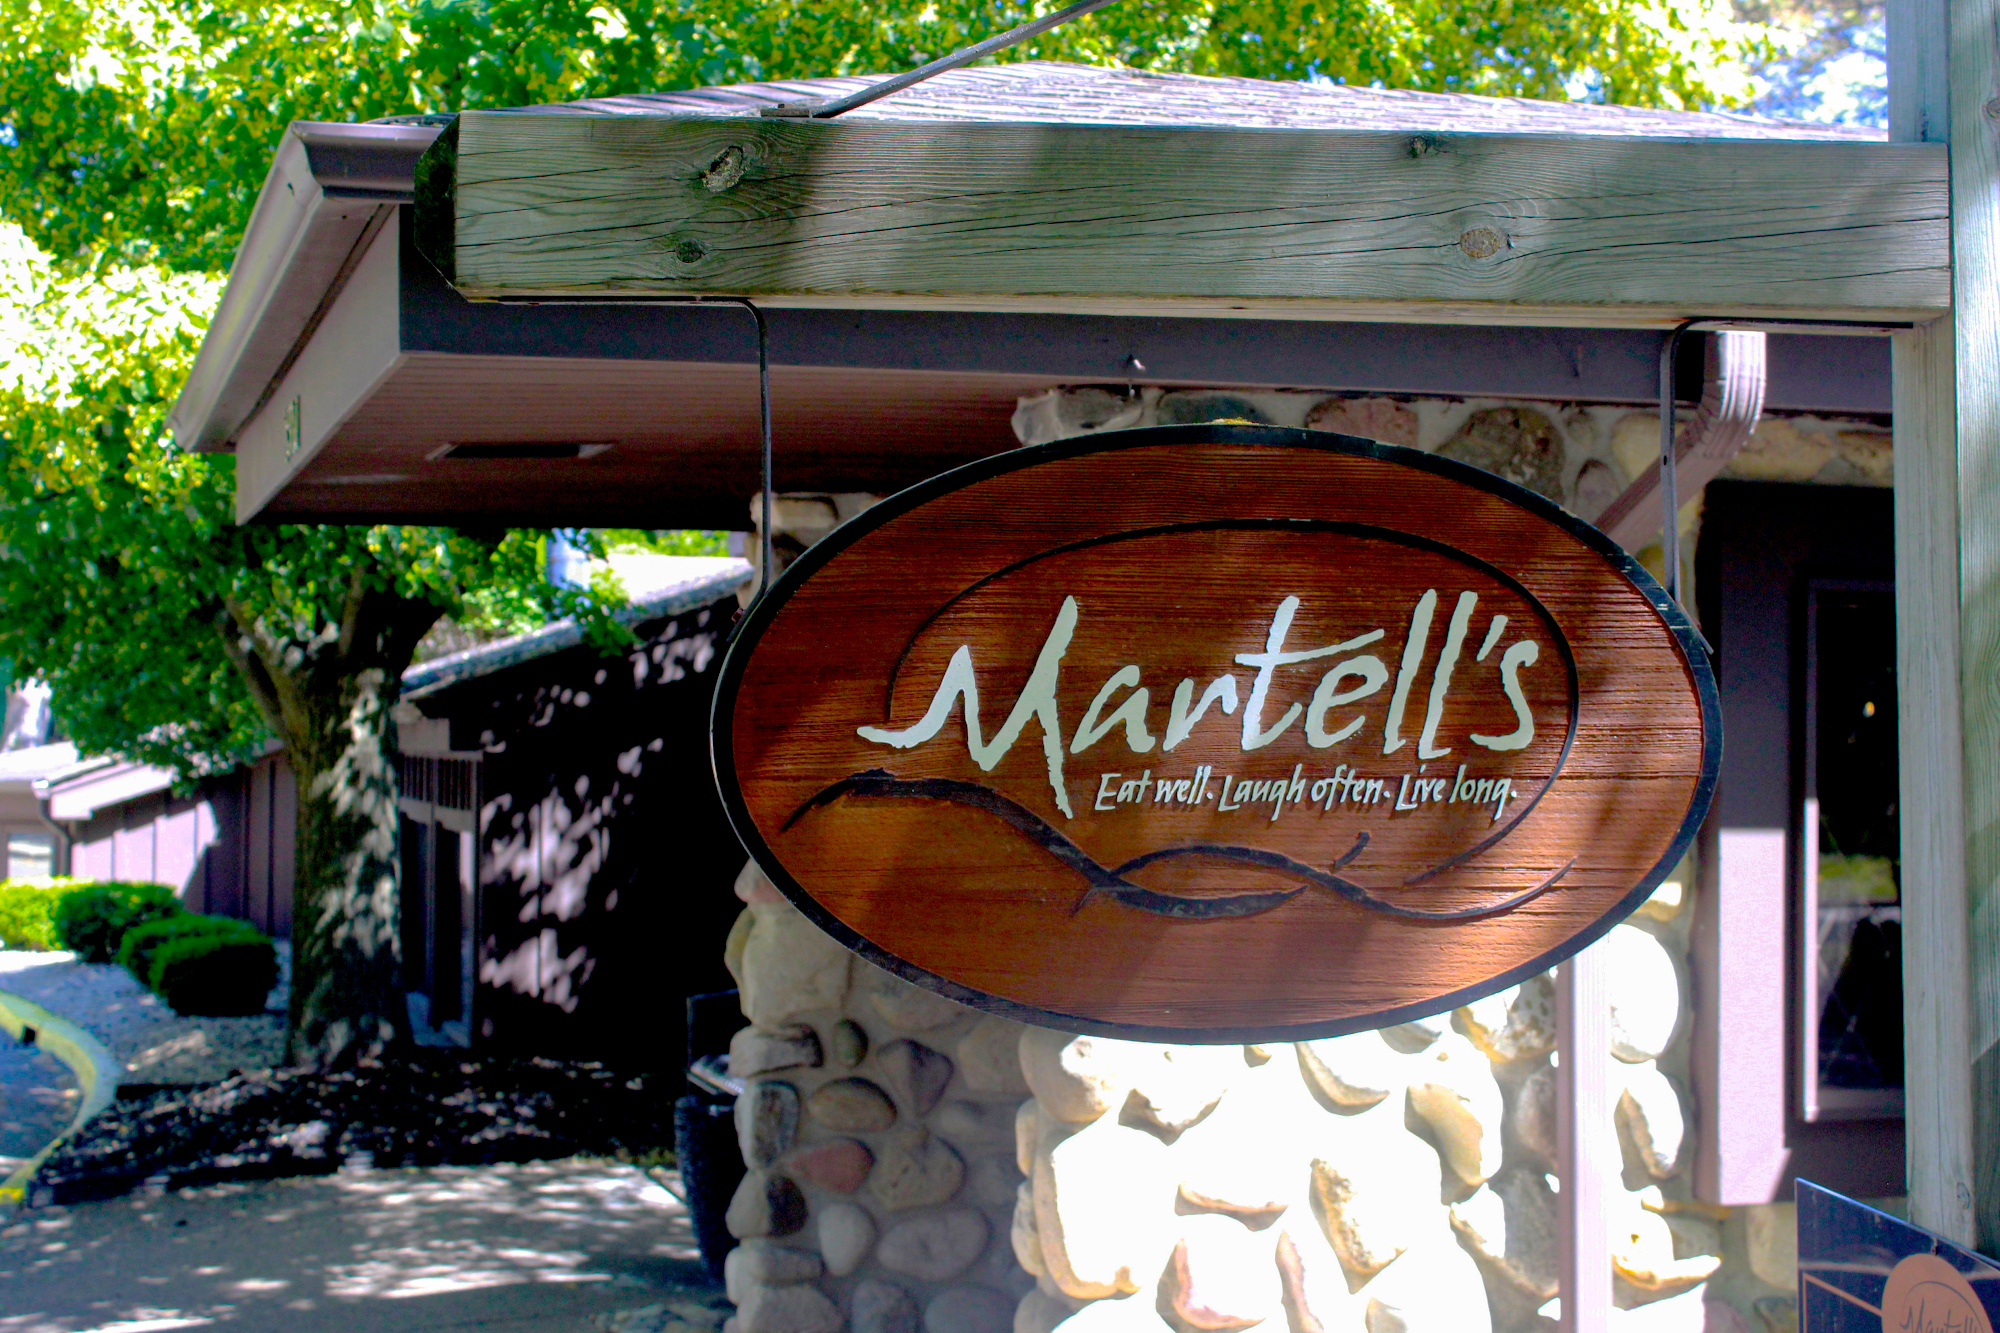 Martell's